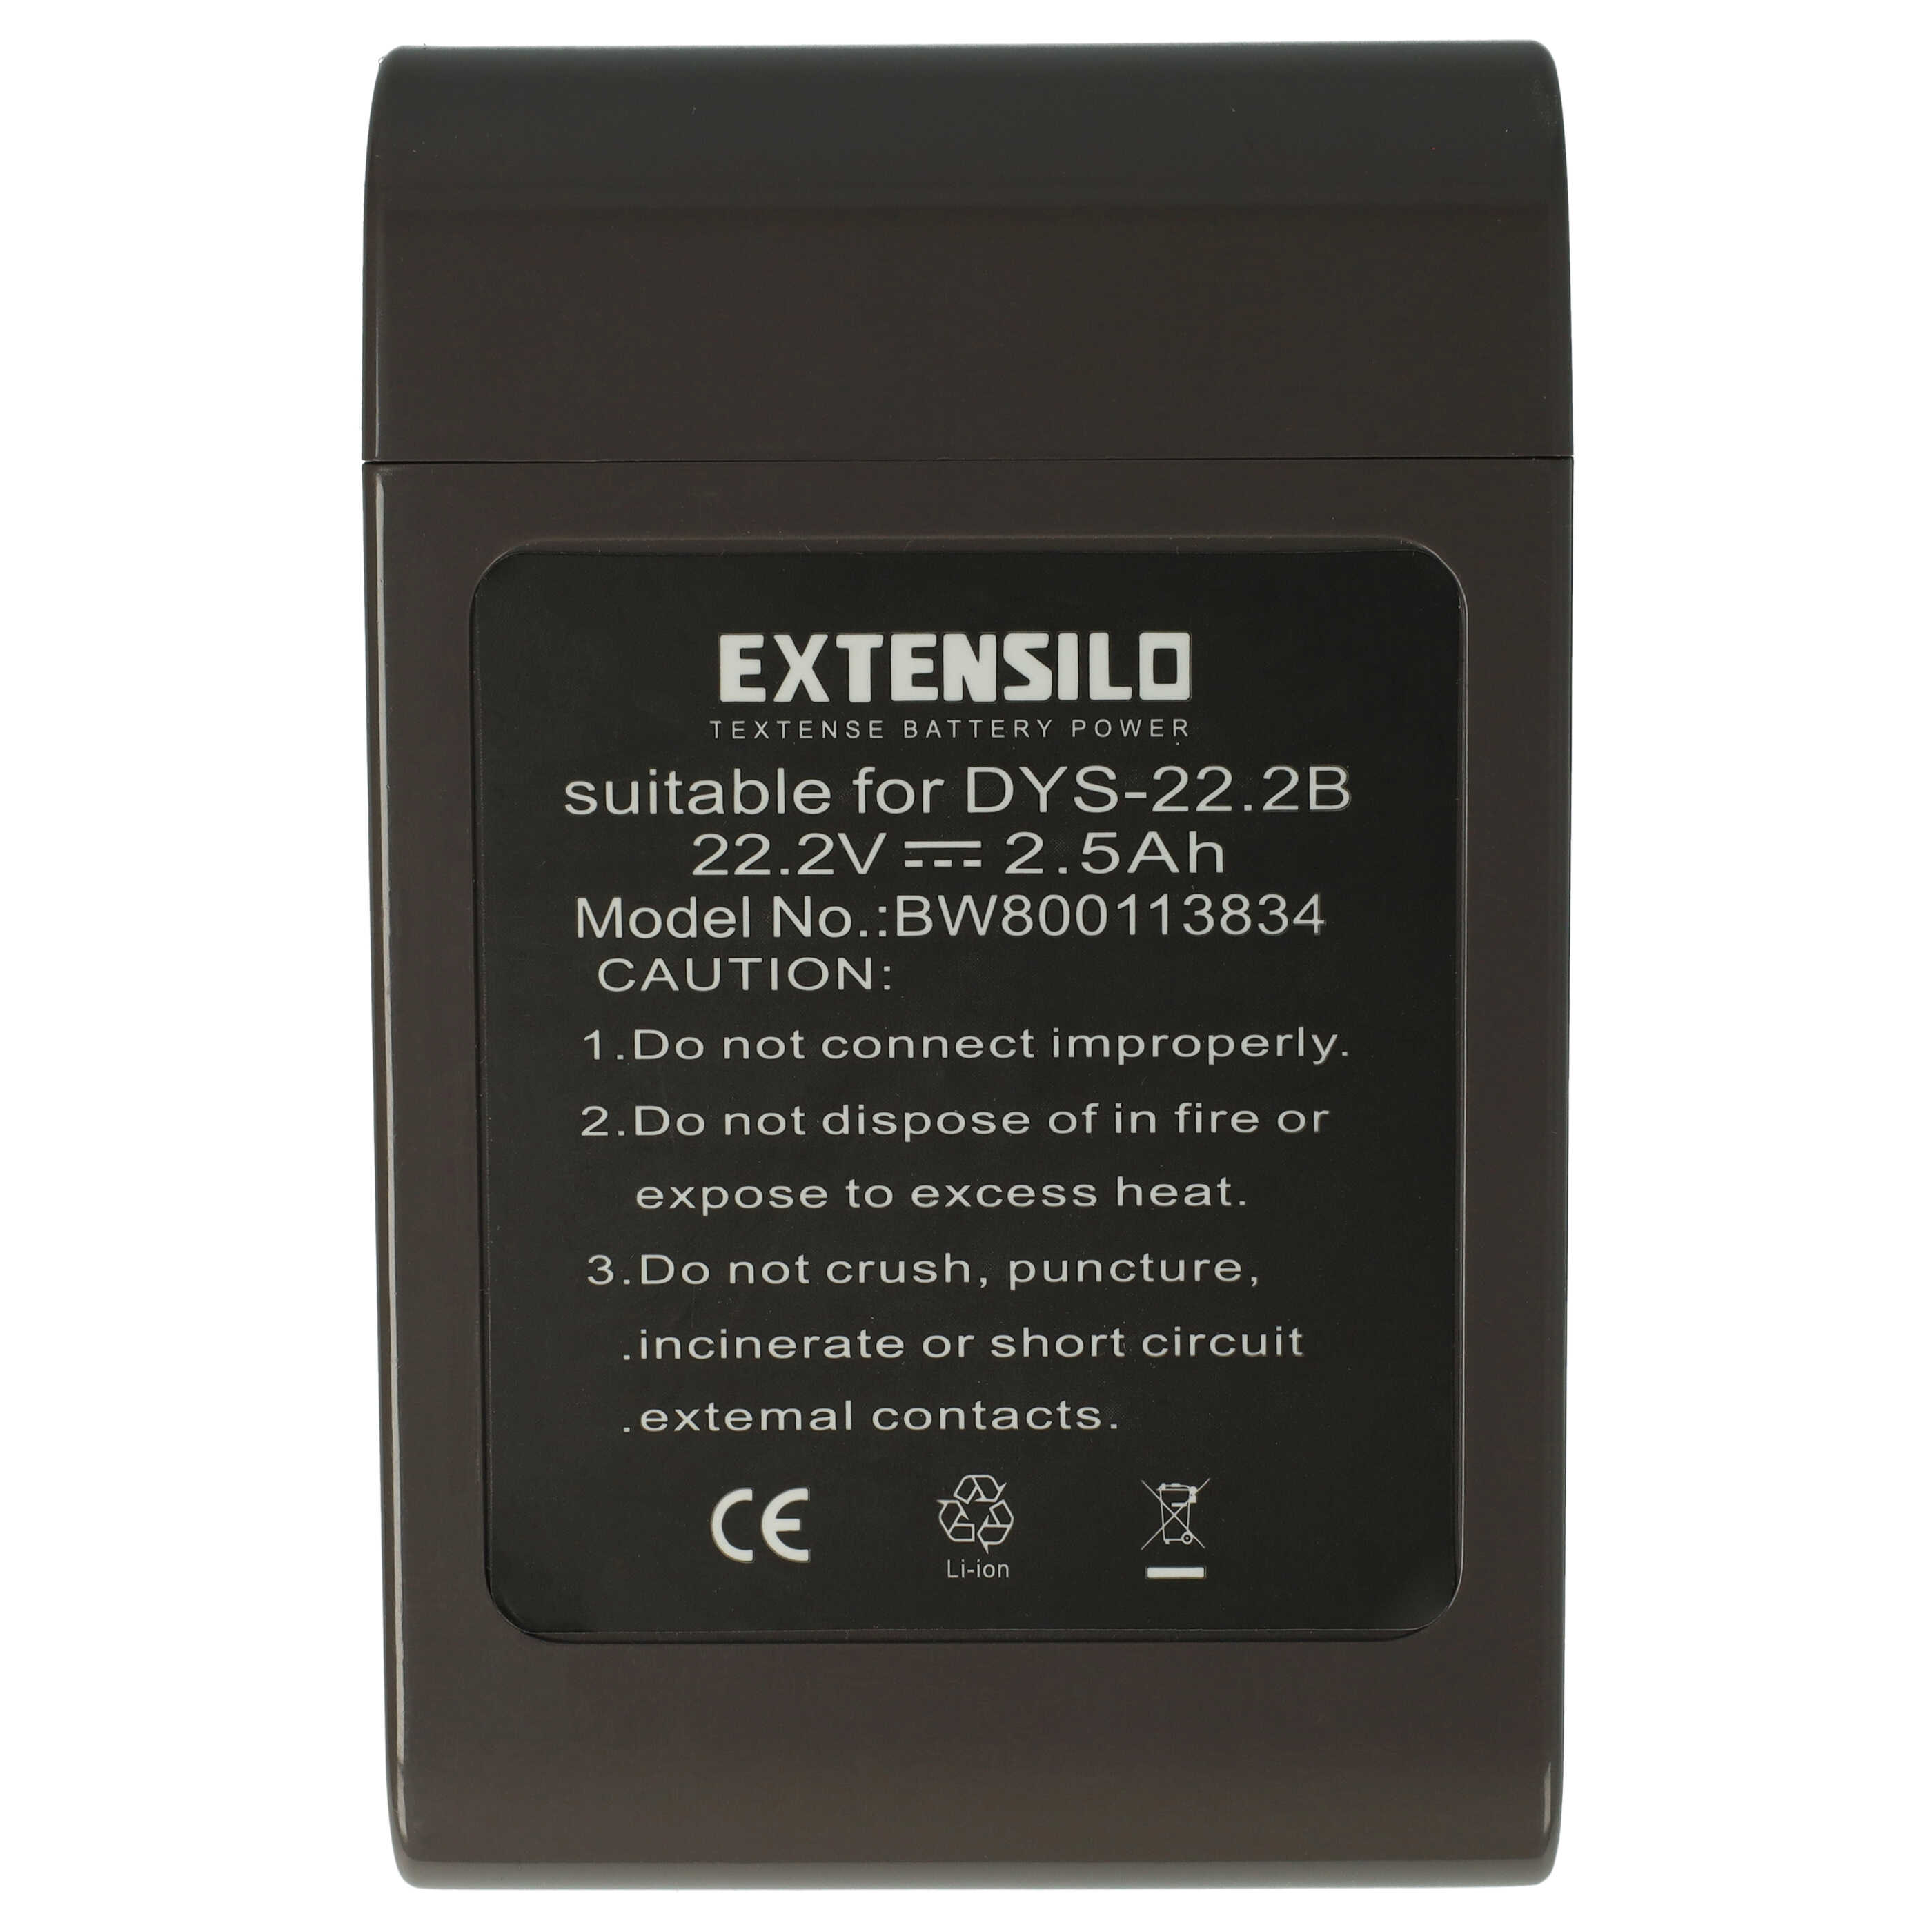 Extensilo Batterie remplace Dyson 17083-3009, 17083-3511 pour aspirateur - 2500mAh 22,2V Li-ion, gris